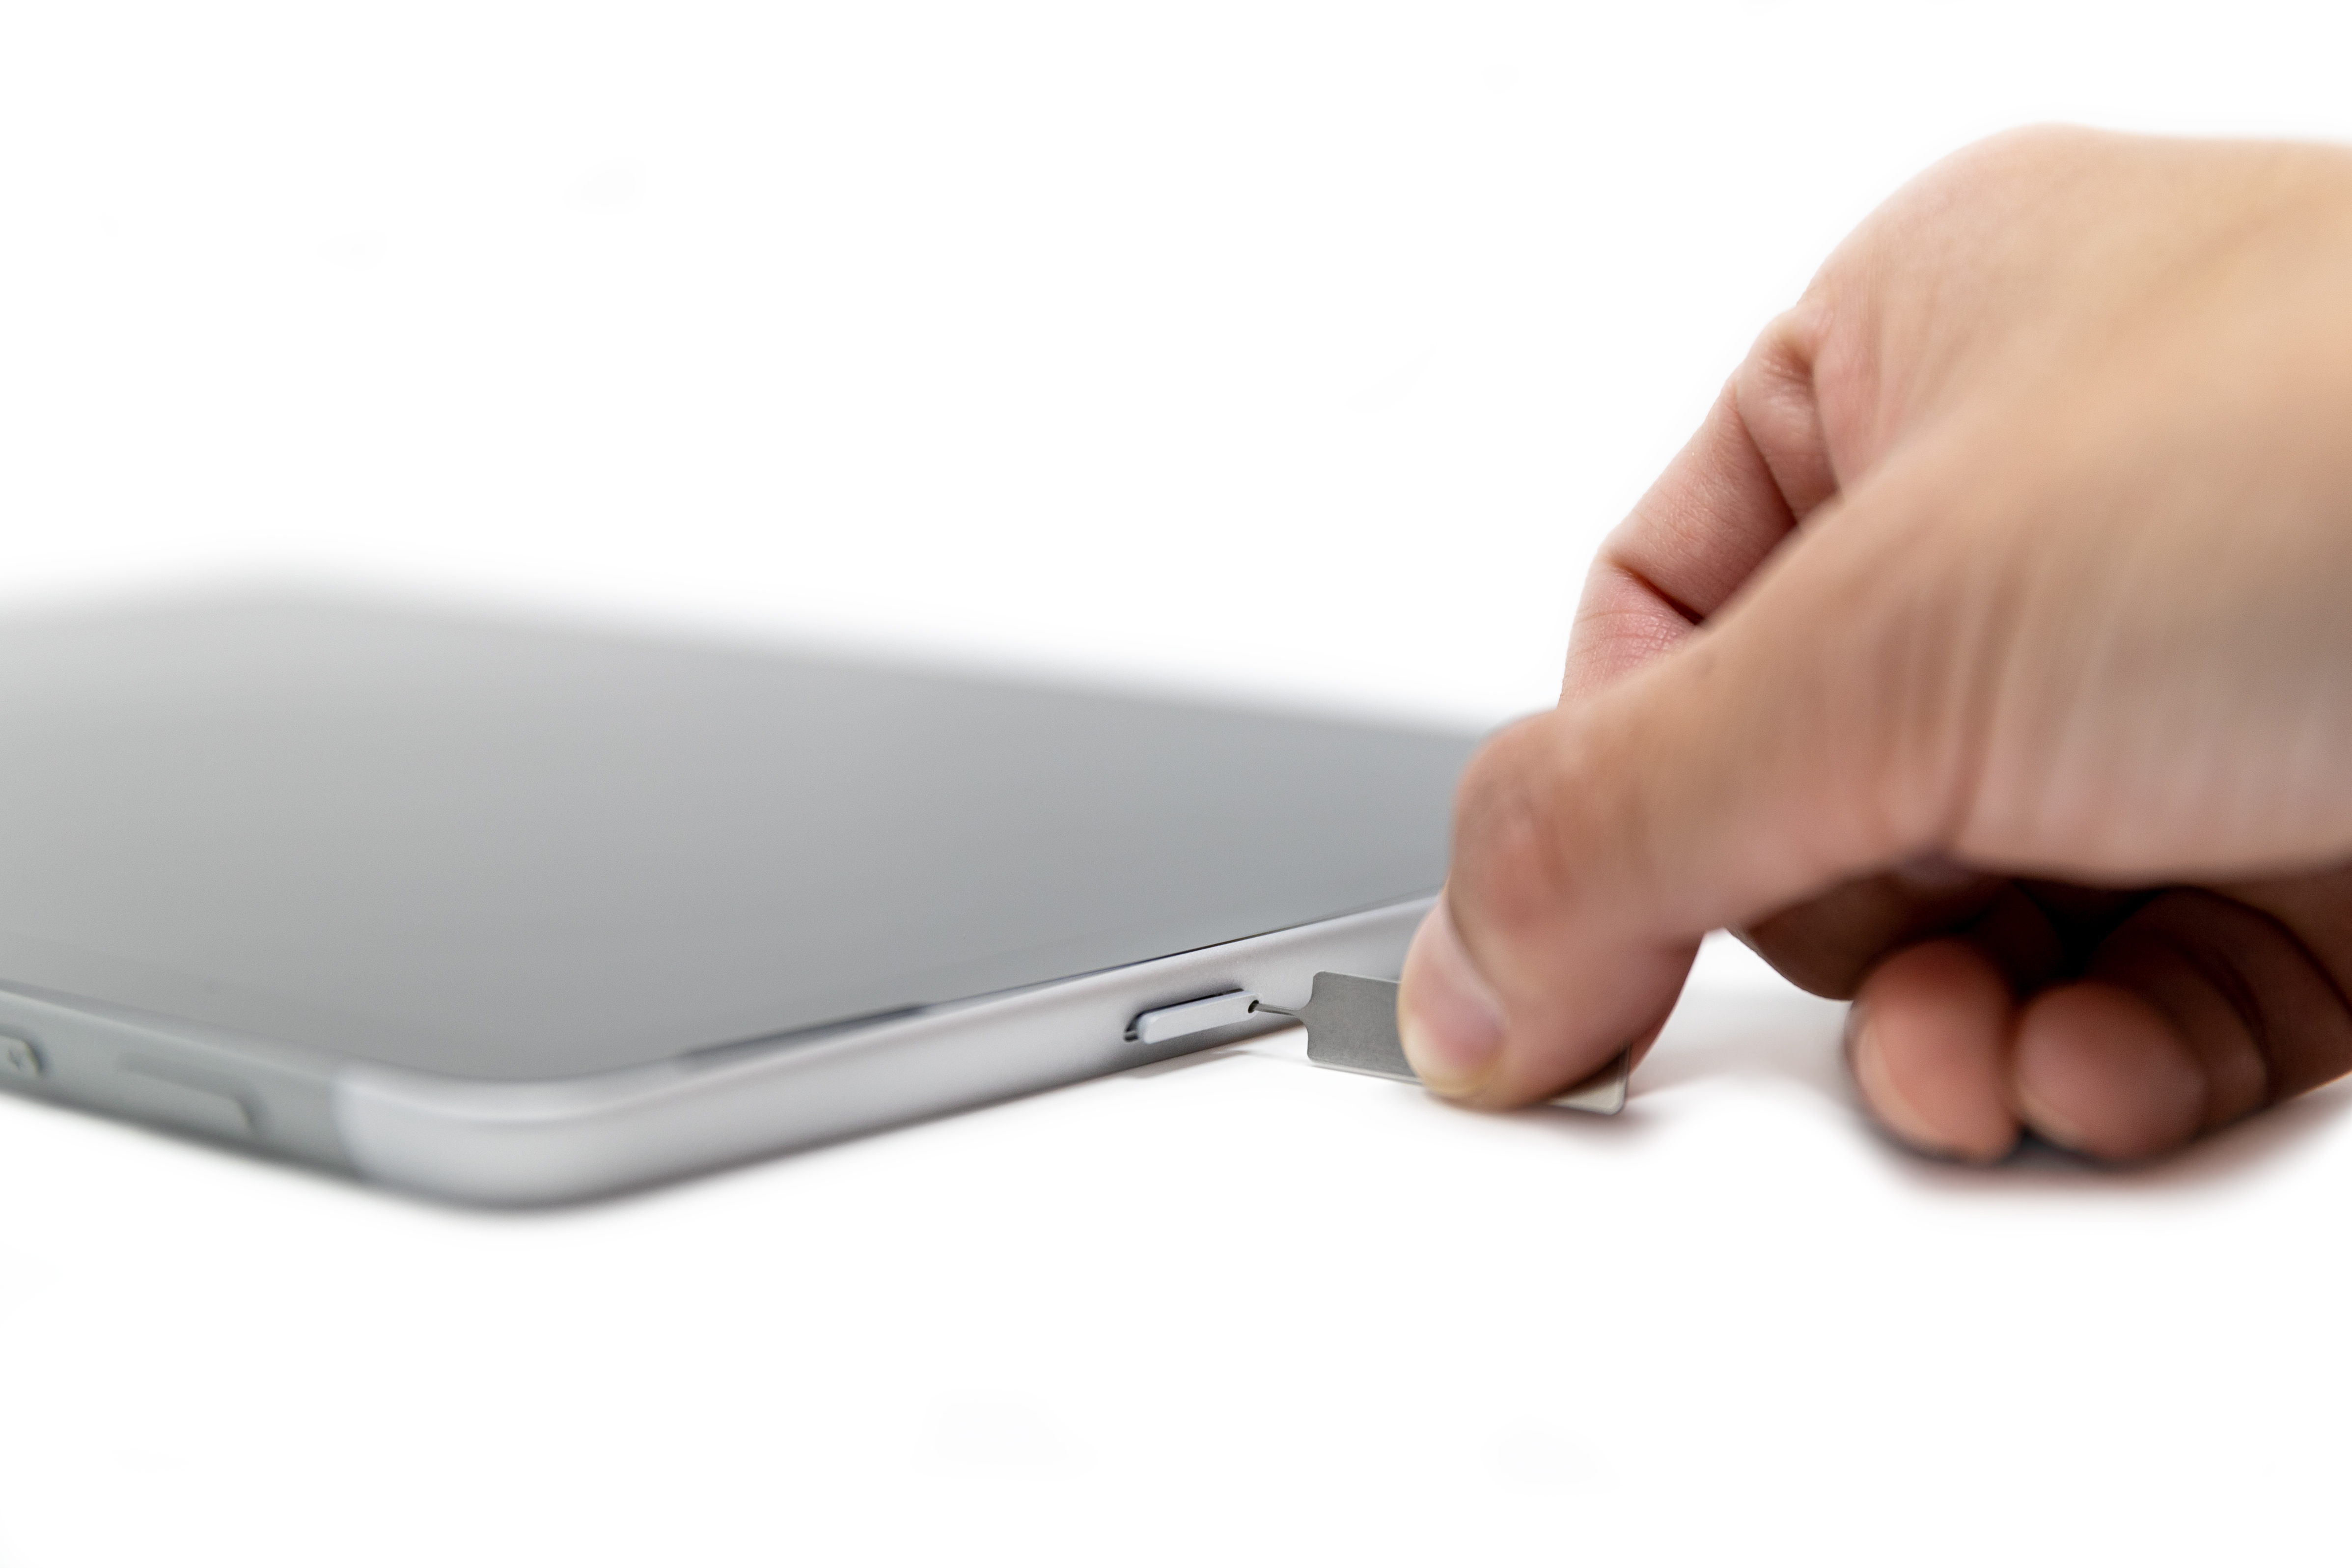 Uma pessoa inserindo um pino SIM no slot sim cartão de um Surface Go 2.